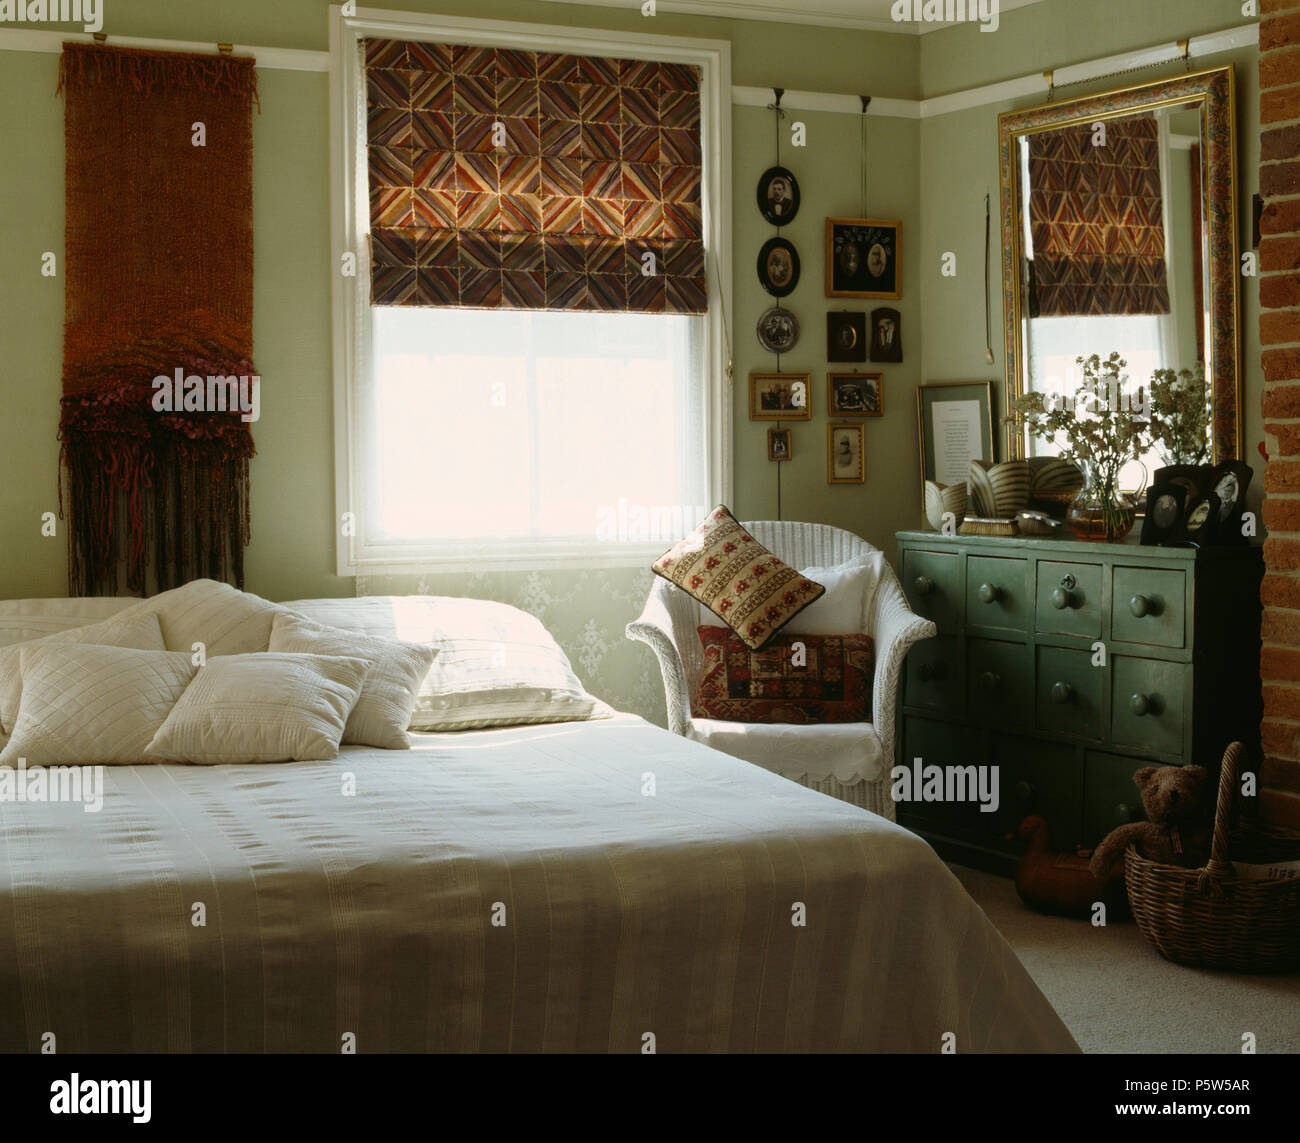 Blind auf Fenster in traditionellen Schlafzimmer Gemusterten mit gemalten Lloyd-Loom Sessel neben dem Bett mit weißer Bettwäsche Stockfoto